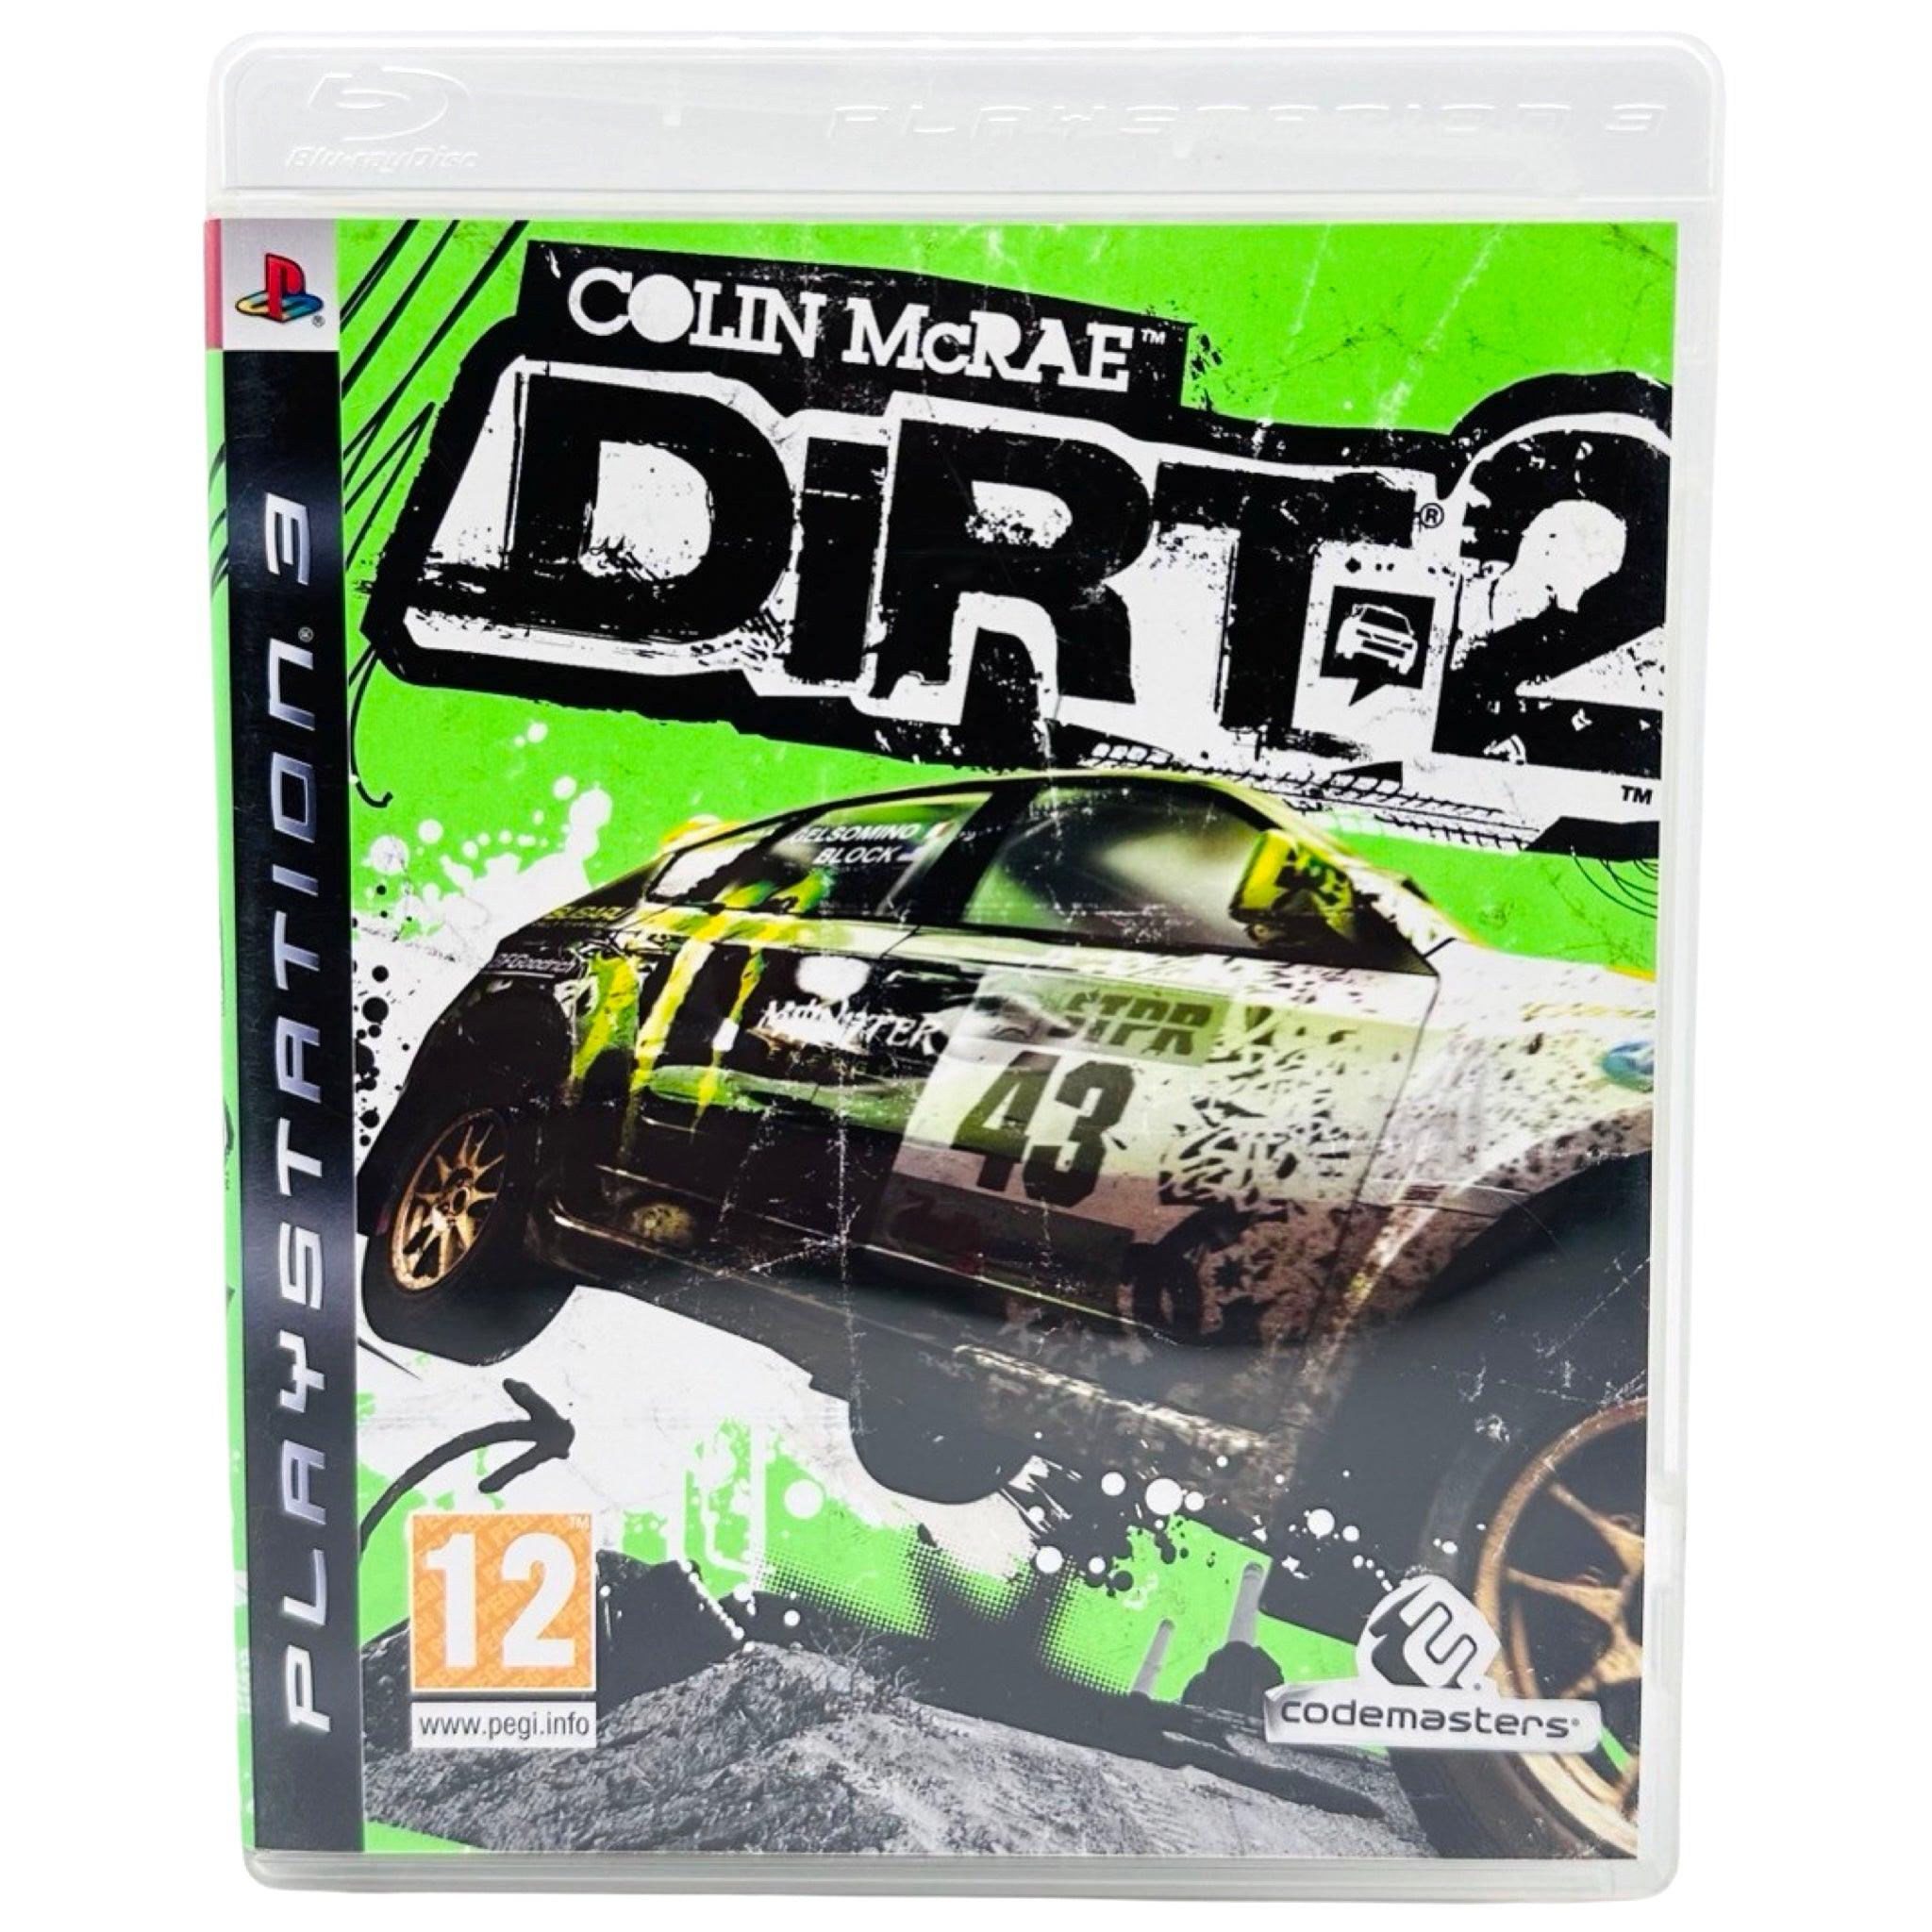 PS3: Colin McRae Dirt 2 - RetroGaming.no